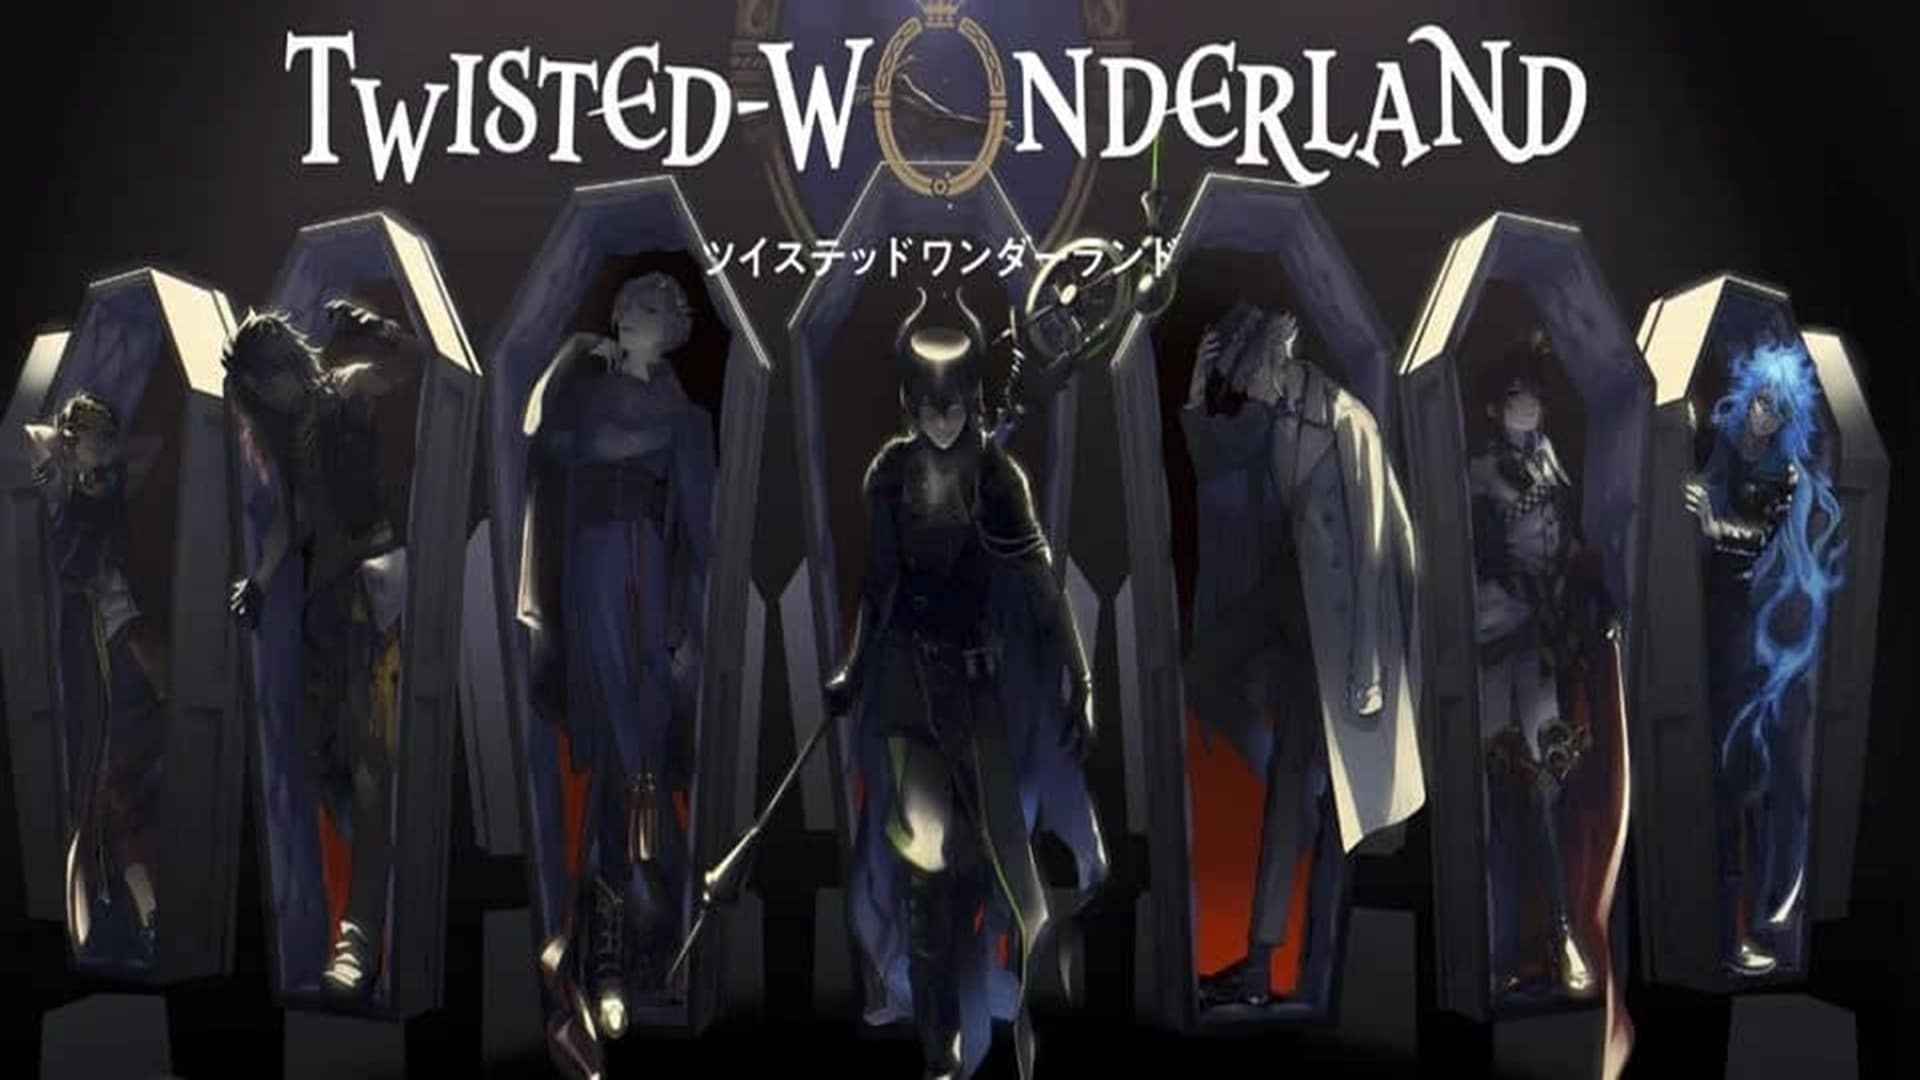 Twisted-Wonderland, el JRPG de Disney anuncia fecha de lanzamiento para Norteamérica, GamersRD